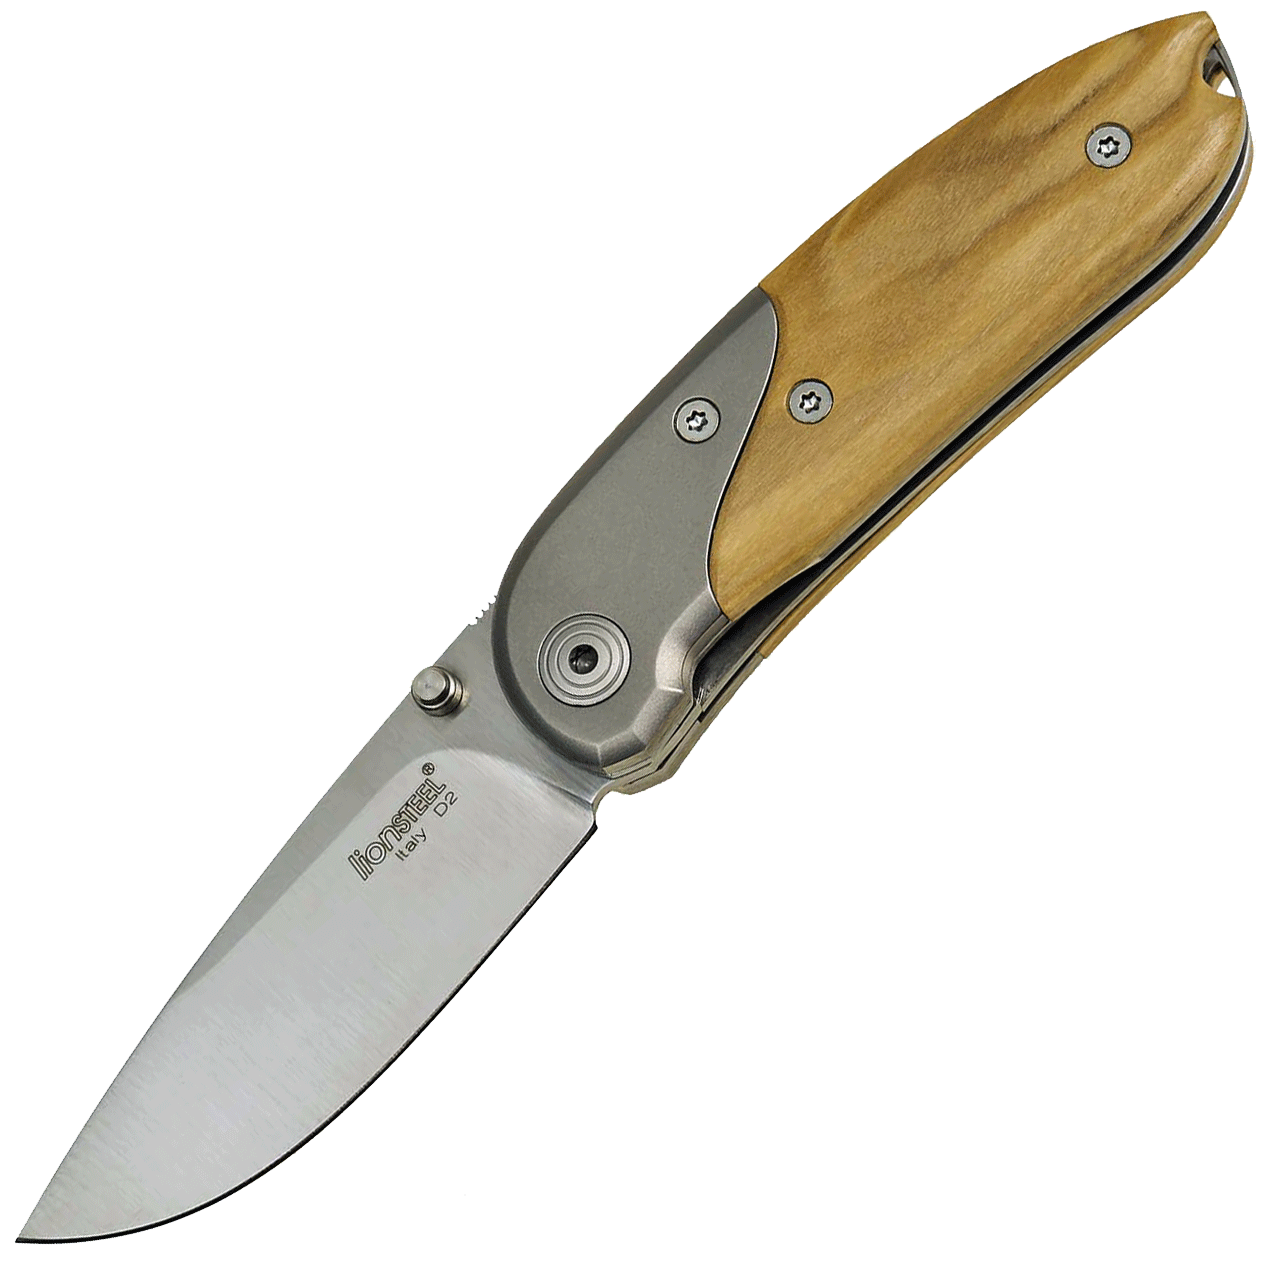 Складной нож Lionsteel Mini, сталь D2, рукоять оливковое дерево